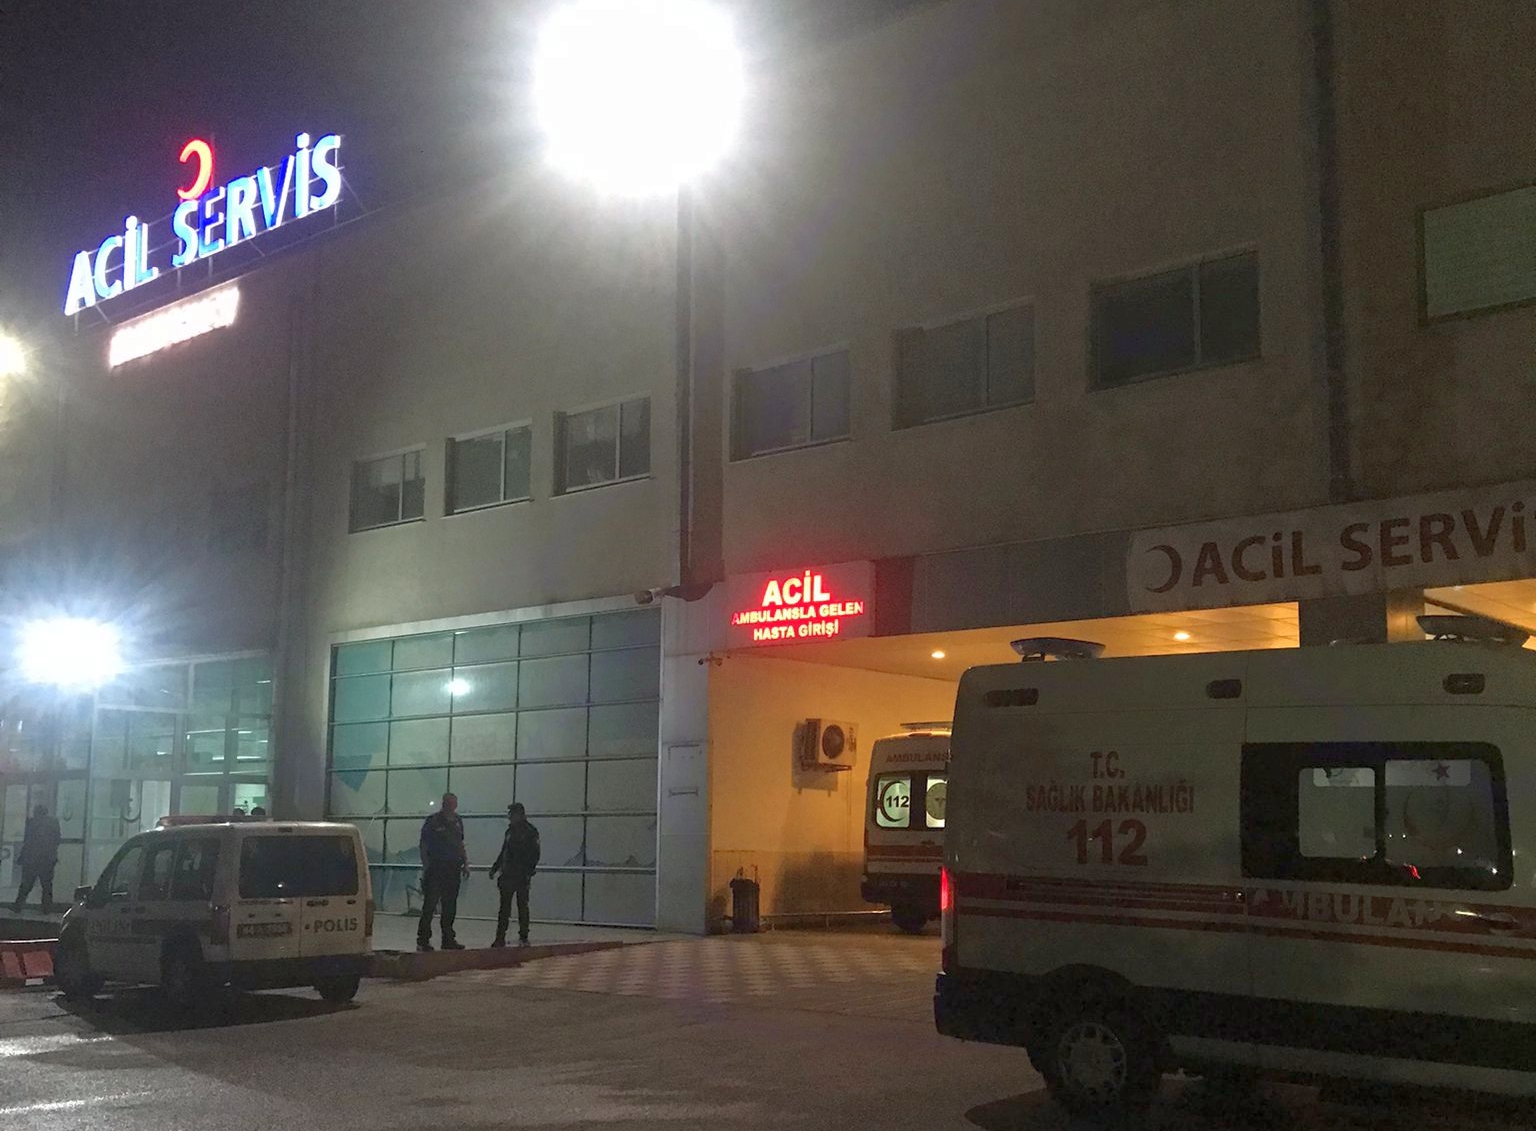 Malatya’da toplayıp yedikleri mantardan zehirlenen yaklaşık 10 kişi hastaneye başvurarak tedavi oldu.